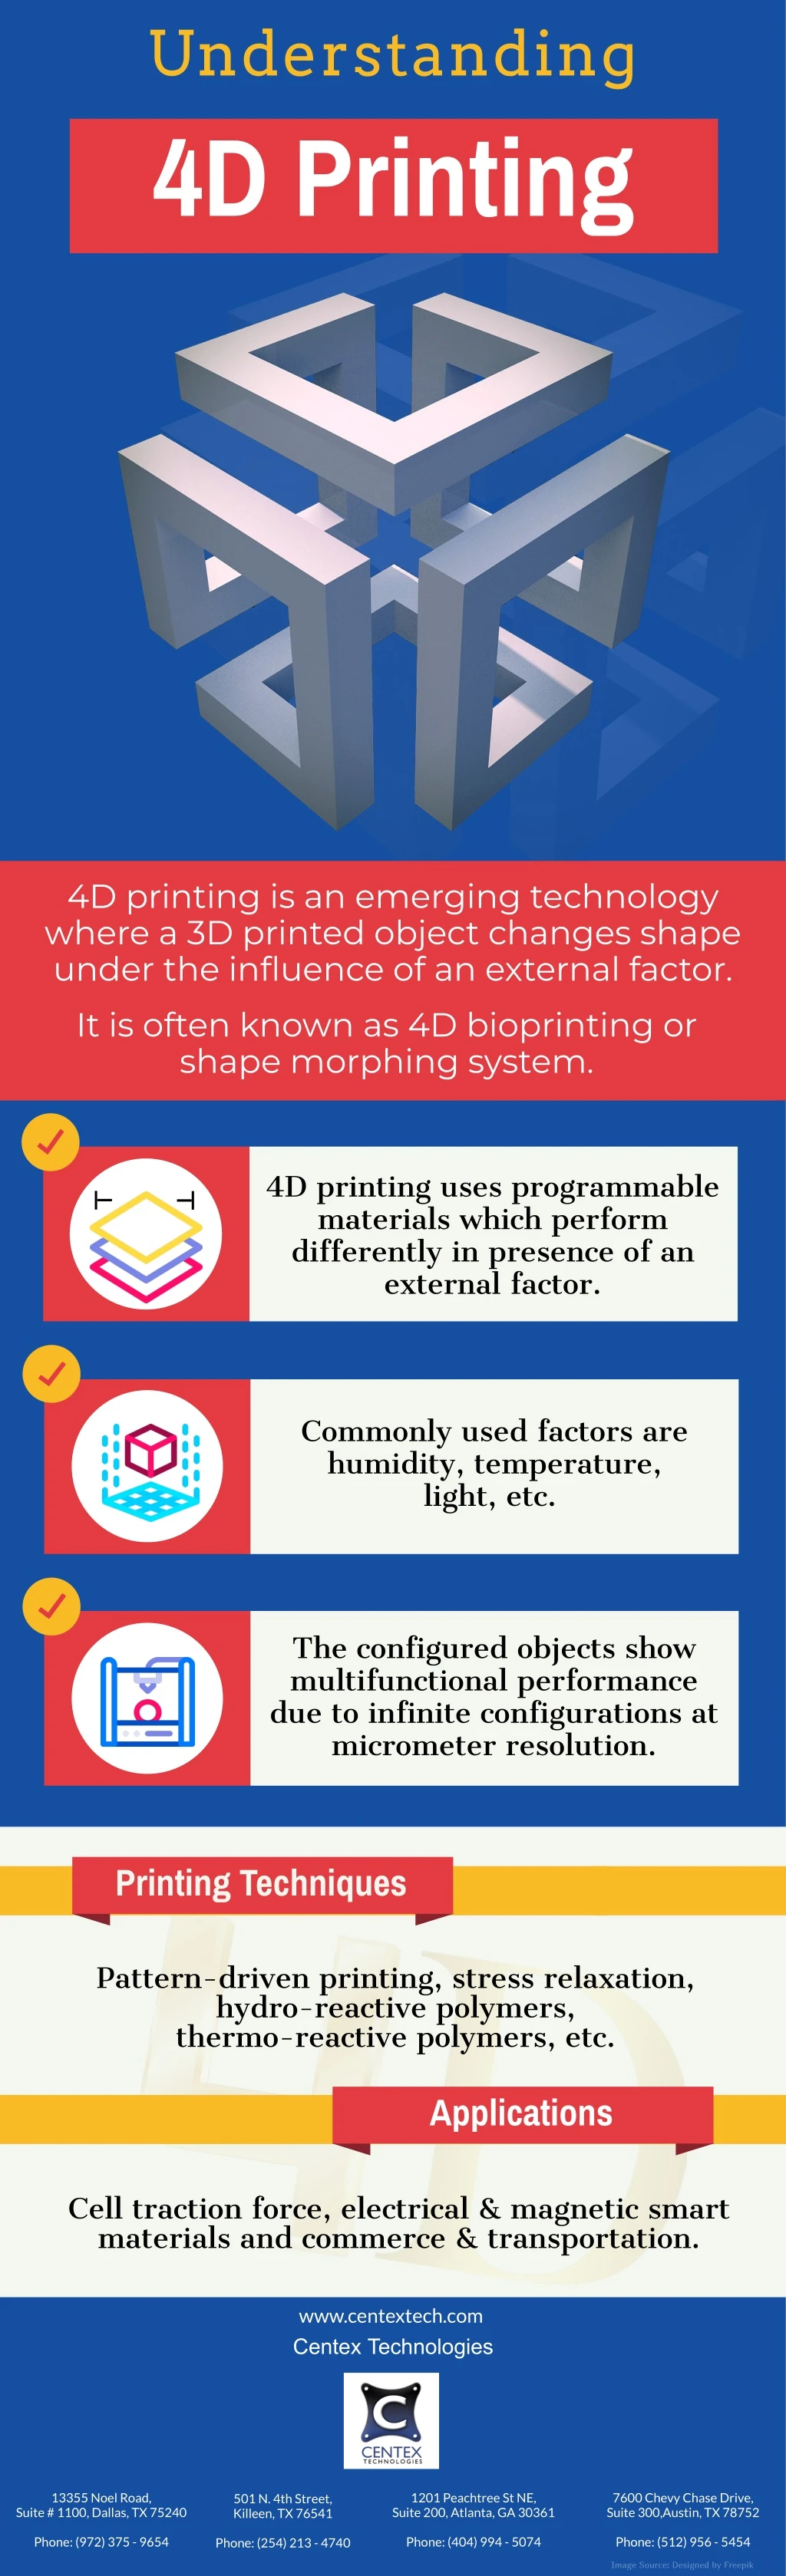 understanding 4d printing